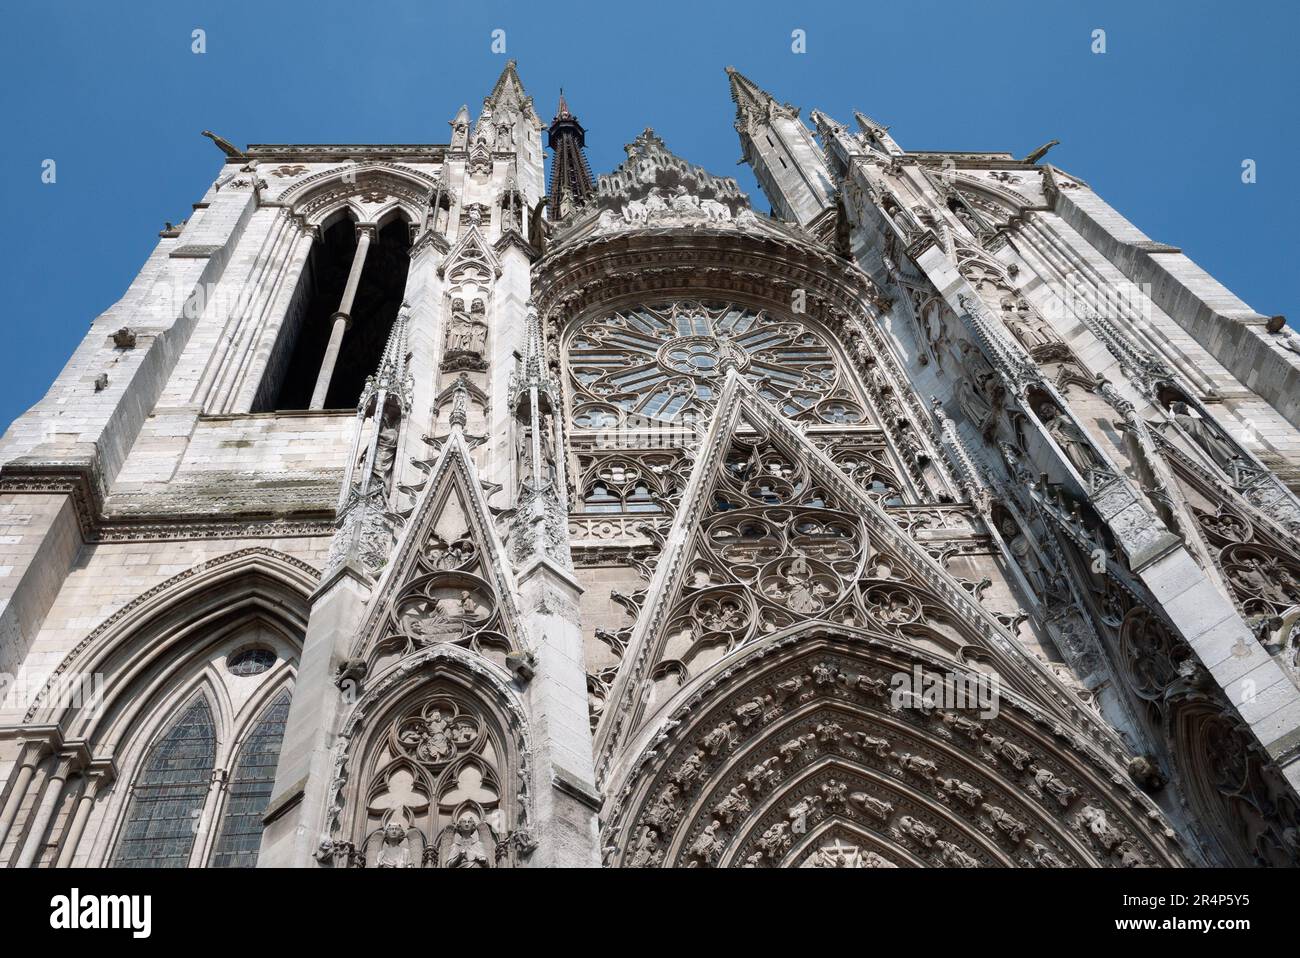 Außenansicht mit Blick auf die Fassade der Kathedrale von Rouen, frankreich Stockfoto